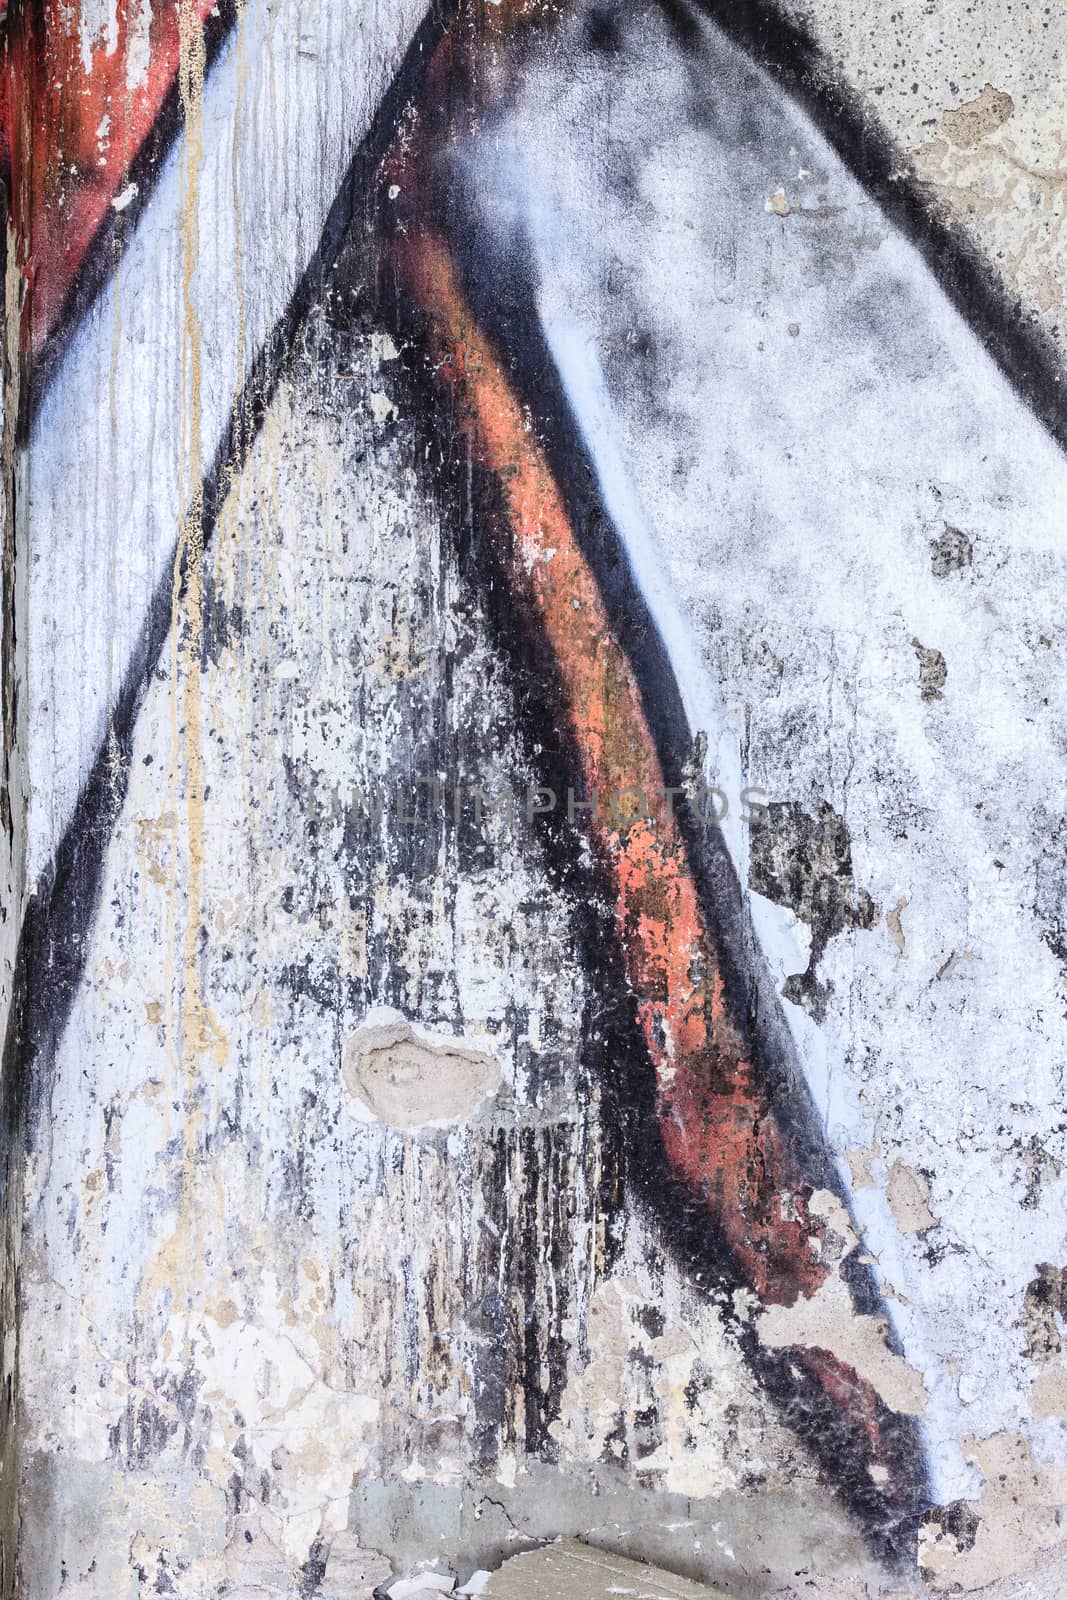 Gaffiti closeup in a damaged concrete wall by juhku